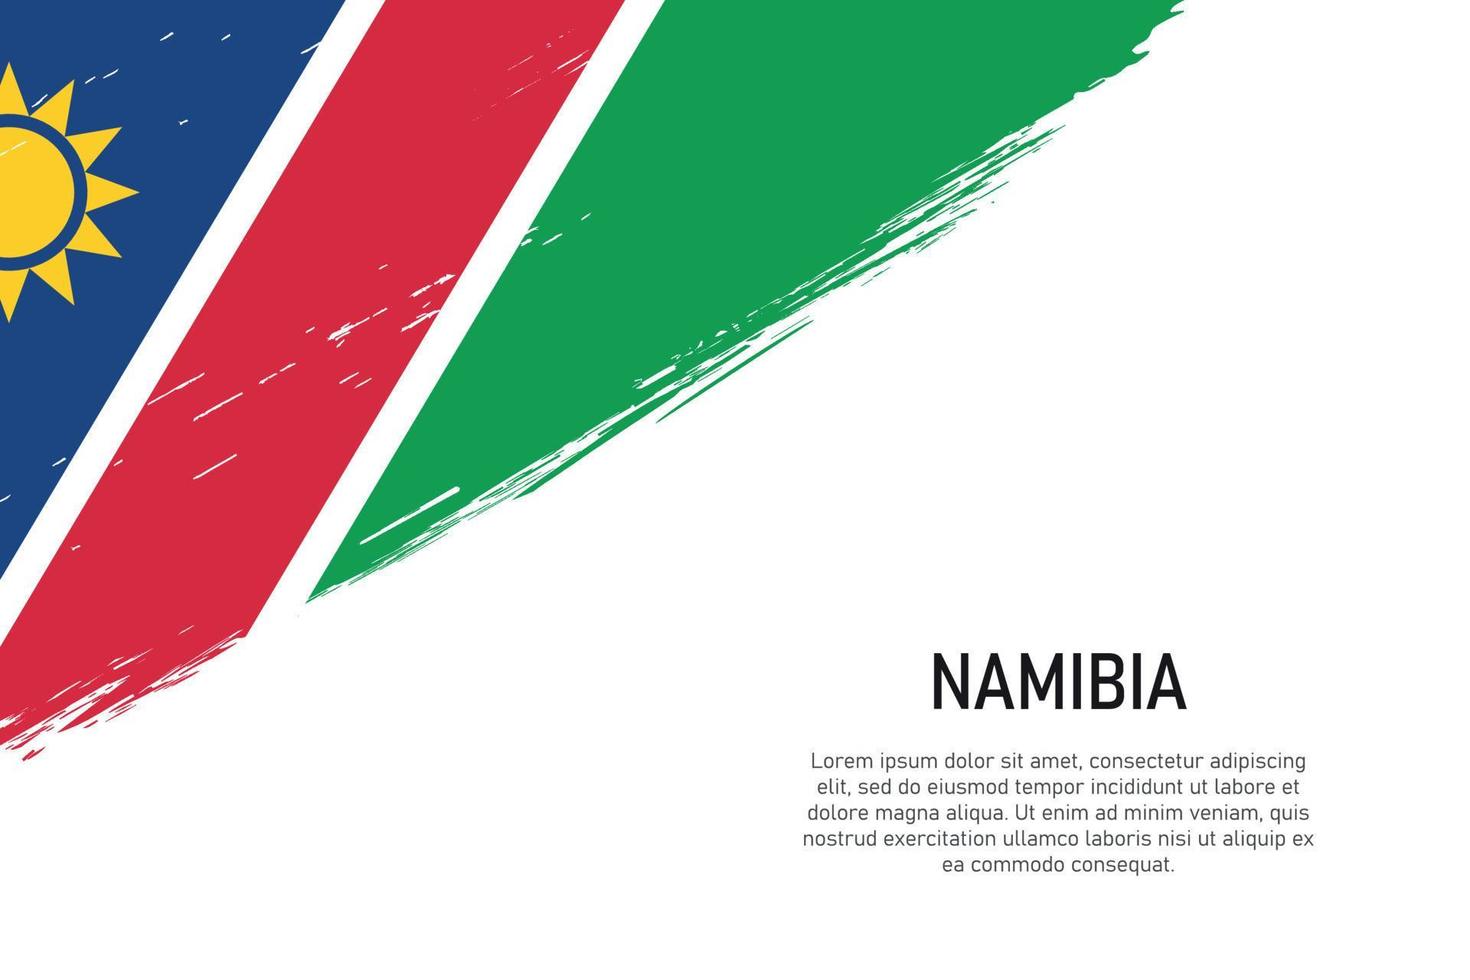 fond de coup de pinceau de style grunge avec le drapeau de la namibie vecteur